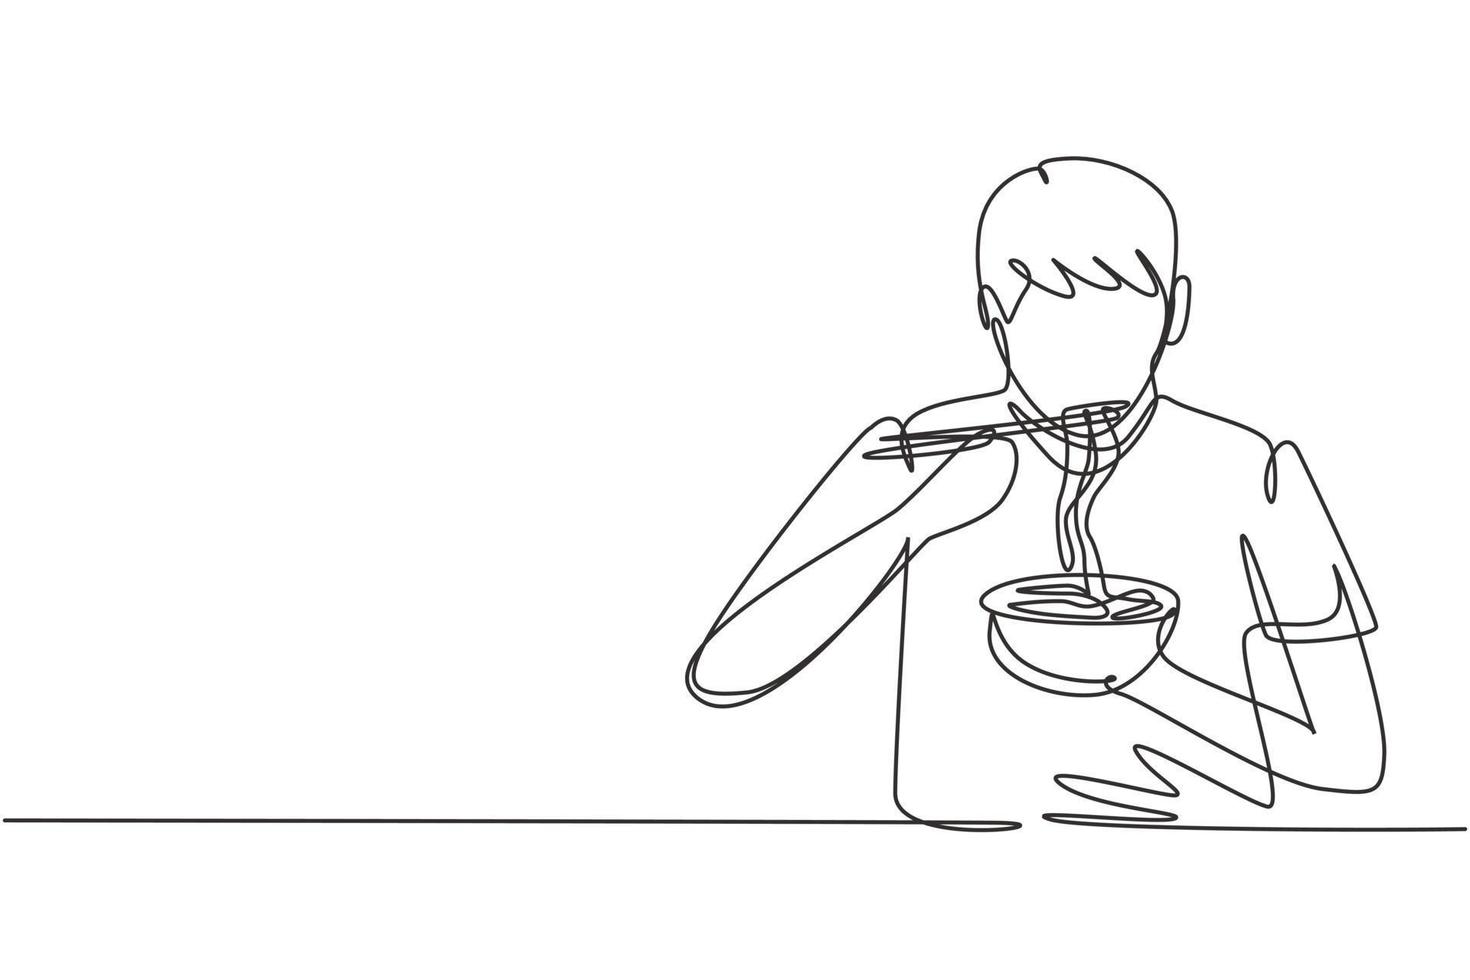 enda kontinuerlig linjeteckning ung man med nudlar måltid med pinnar runt bordet. njut av lunch när du är hungrig. utsökt och hälsosam mat. dynamisk en rad rita grafisk design vektorillustration vektor